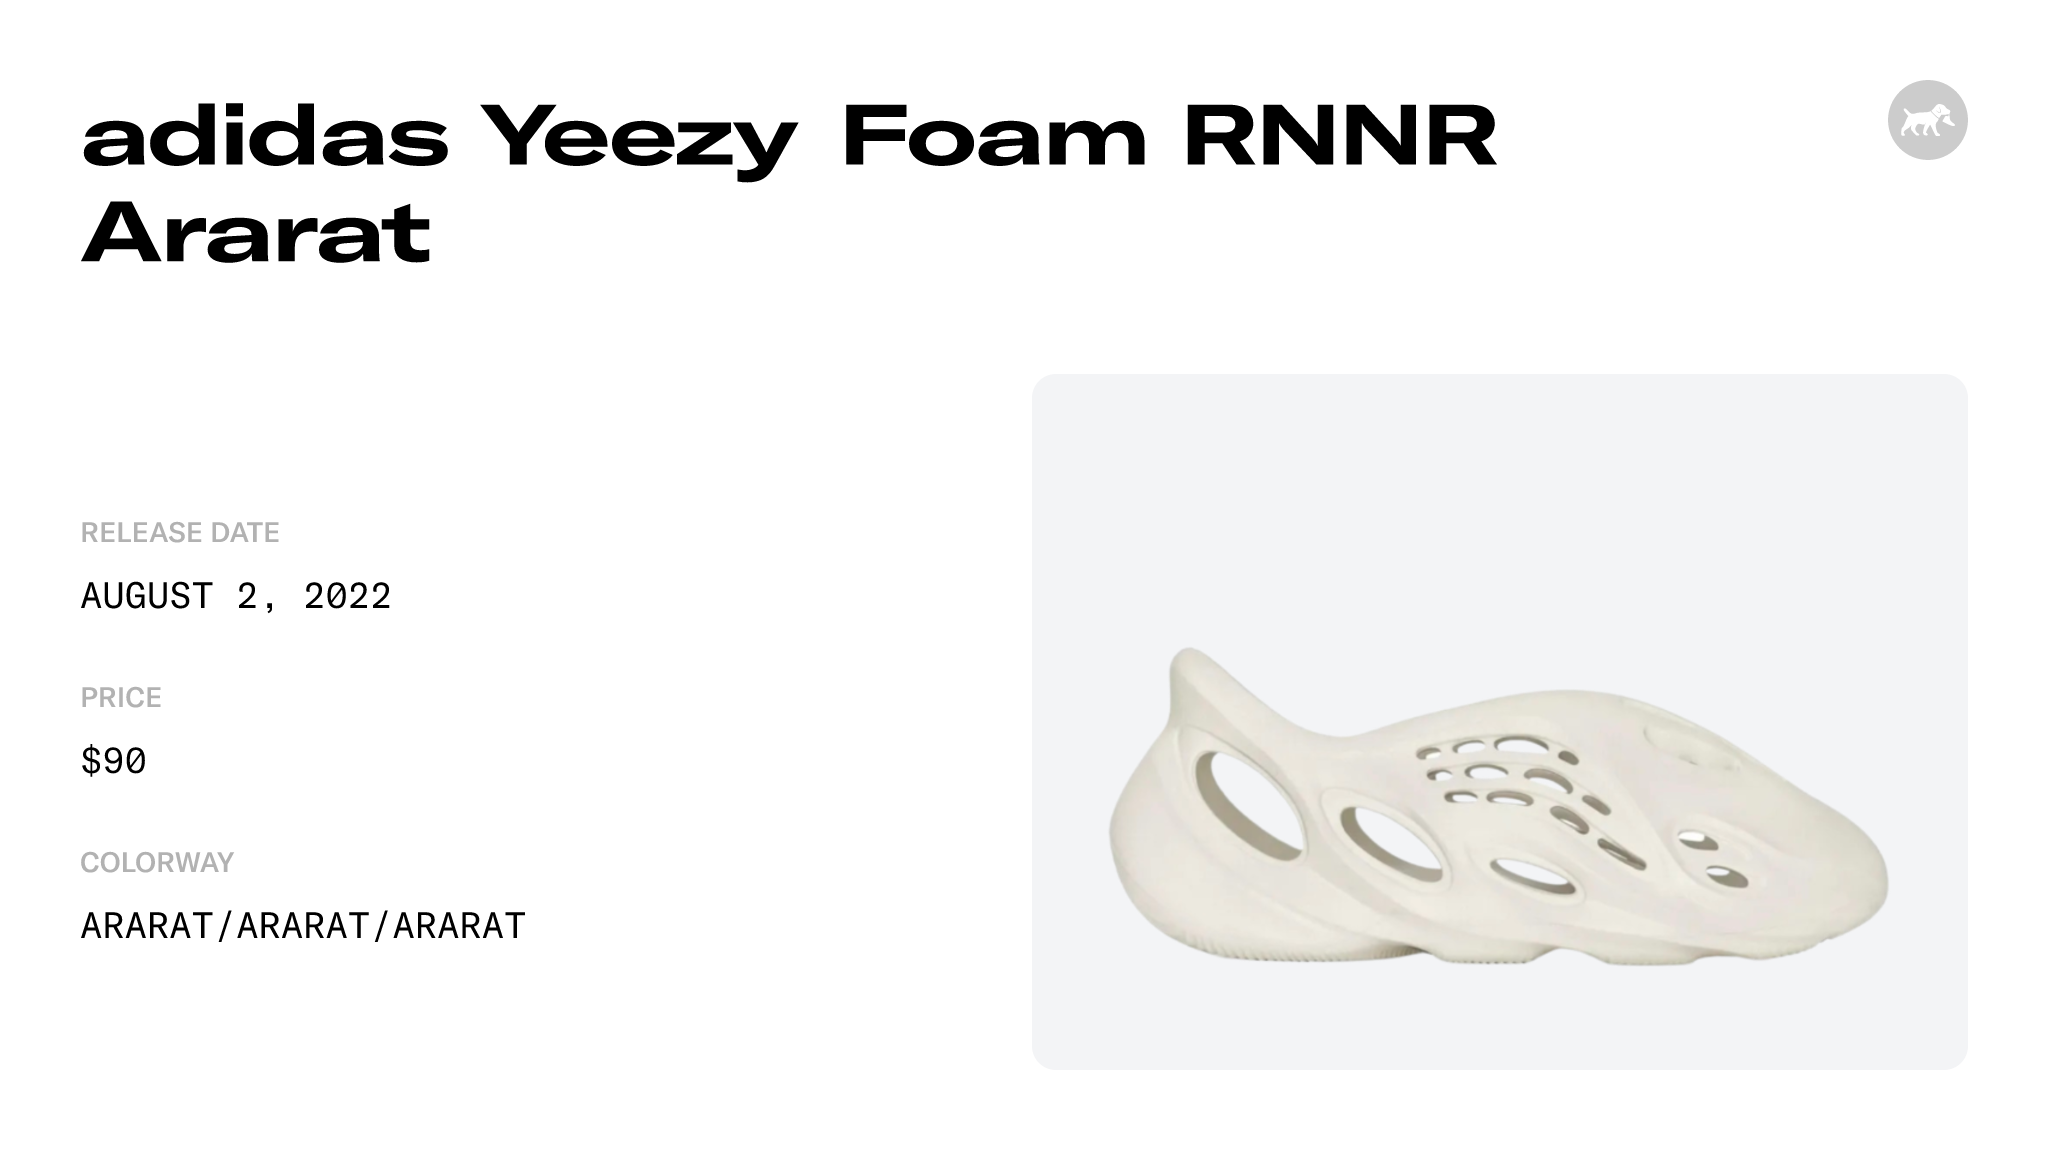 Buy Yeezy Foam Runner Ararat - Stadium Goods